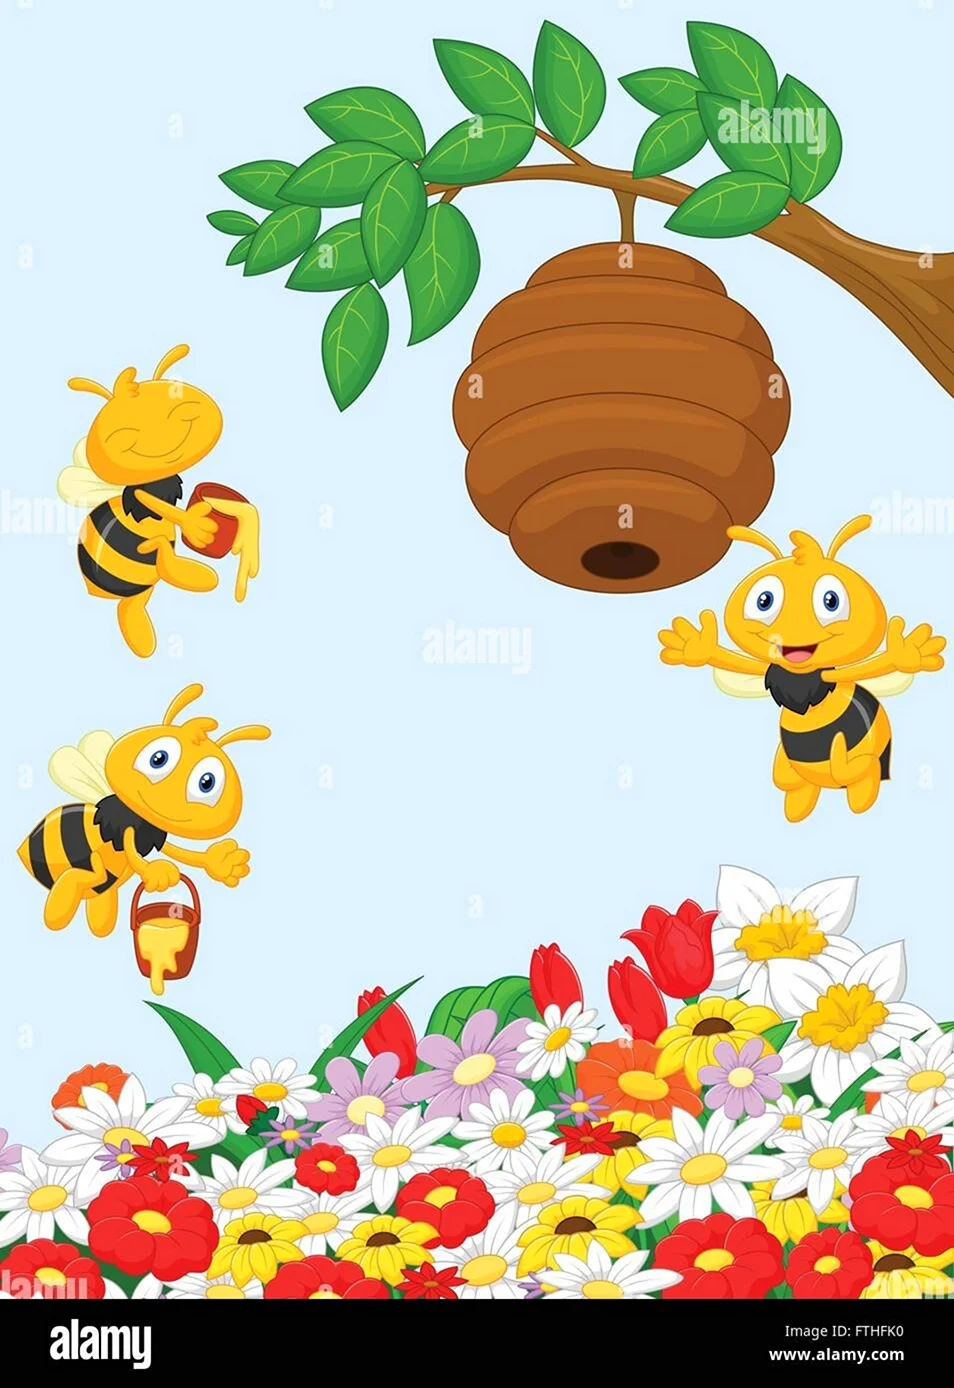 Полянка с пчелками